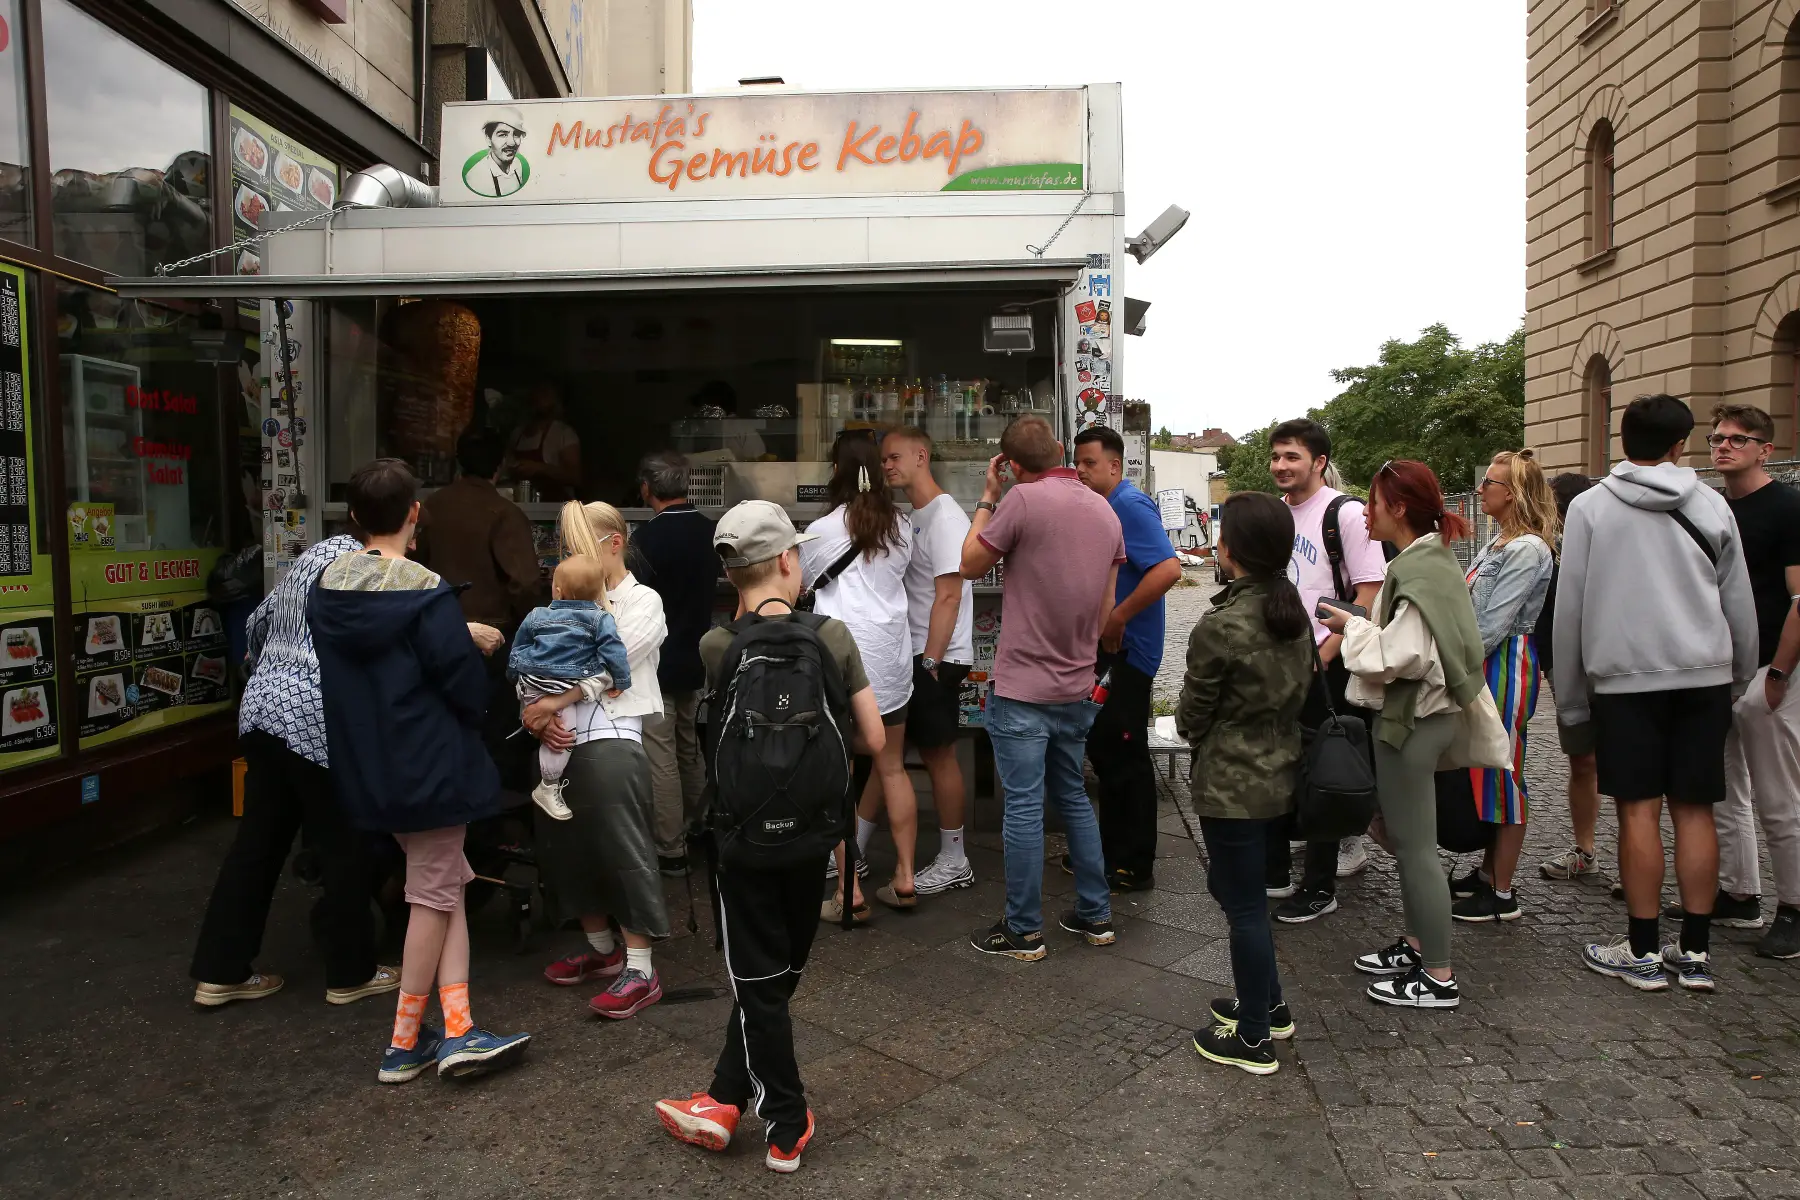 Line outside kebab street vendor in Berlin